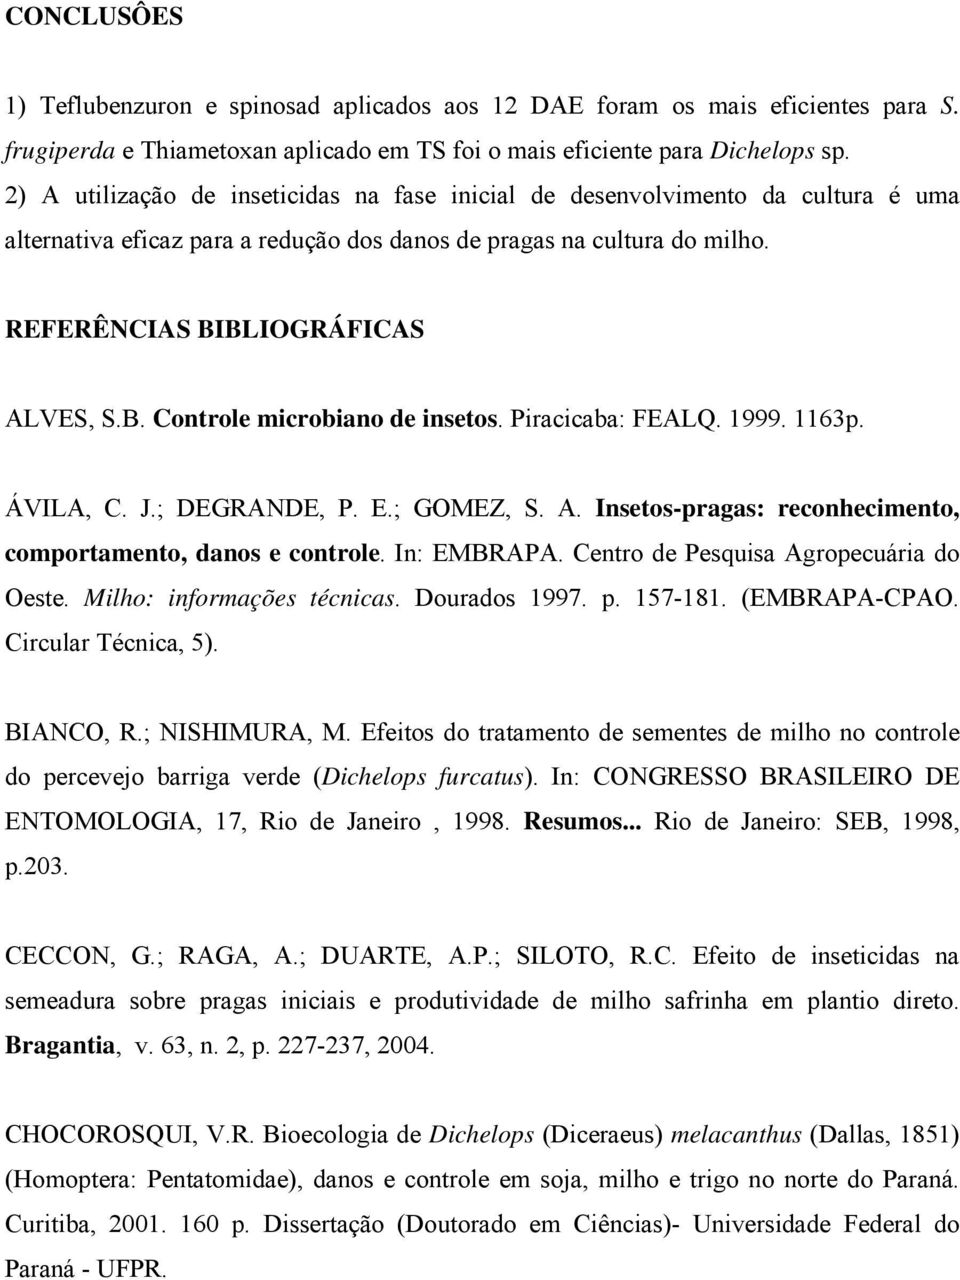 BLIOGRÁFICAS ALVES, S.B. Controle microbiano de insetos. Piracica: FEALQ. 1999. 1163p. ÁVILA, C. J.; DEGRANDE, P. E.; GOMEZ, S. A. Insetos-pragas: reconhecimento, comportamento, danos e controle.